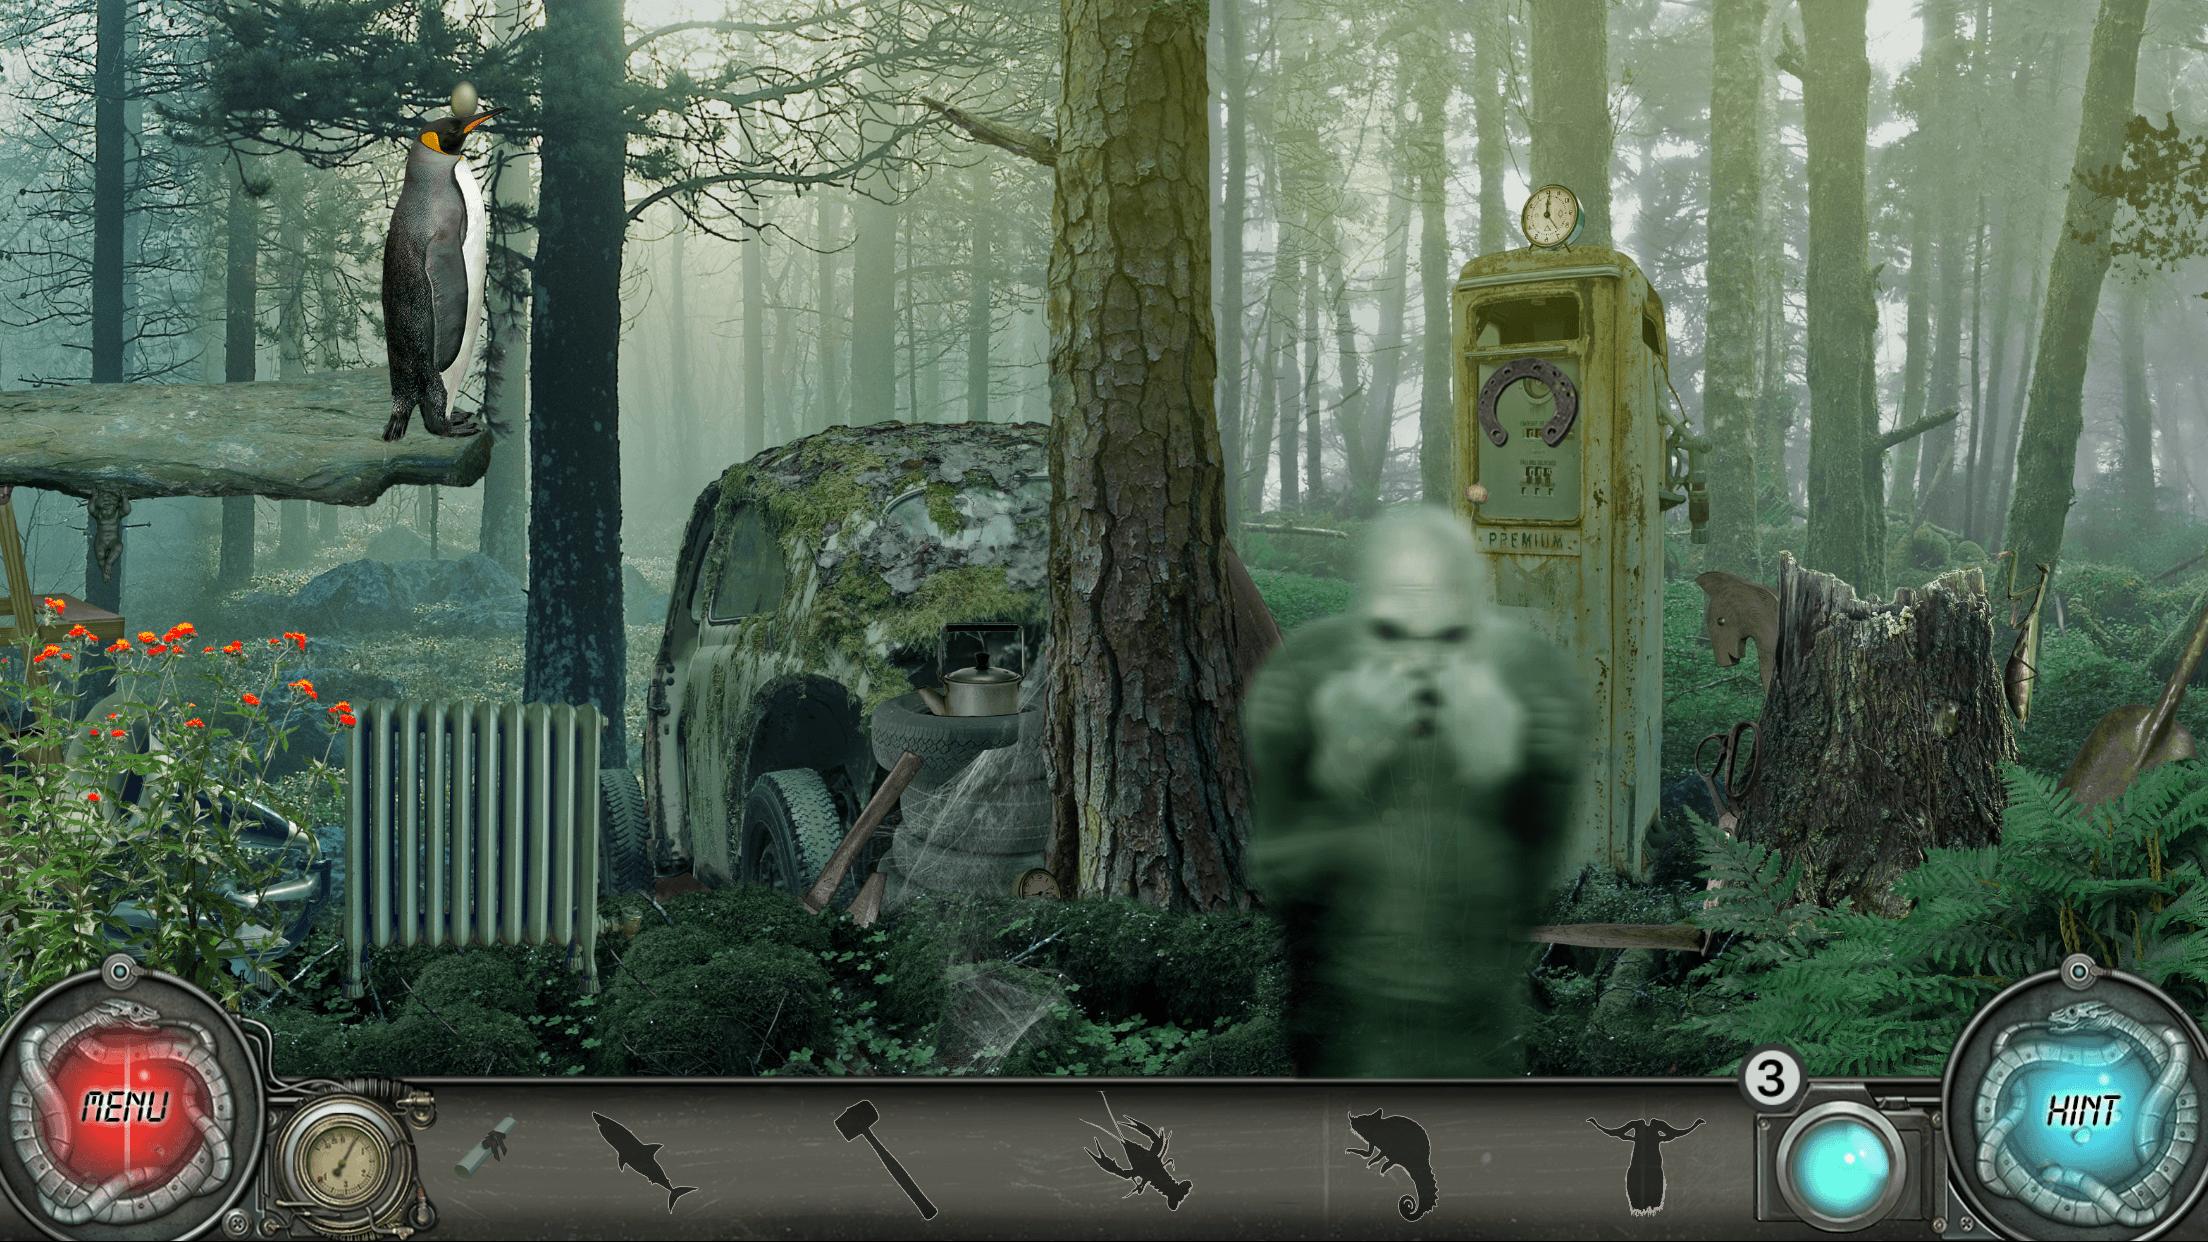 Time Trap 2 Mystery Hidden Object Adventure Games 1.0.025 Screenshot 5